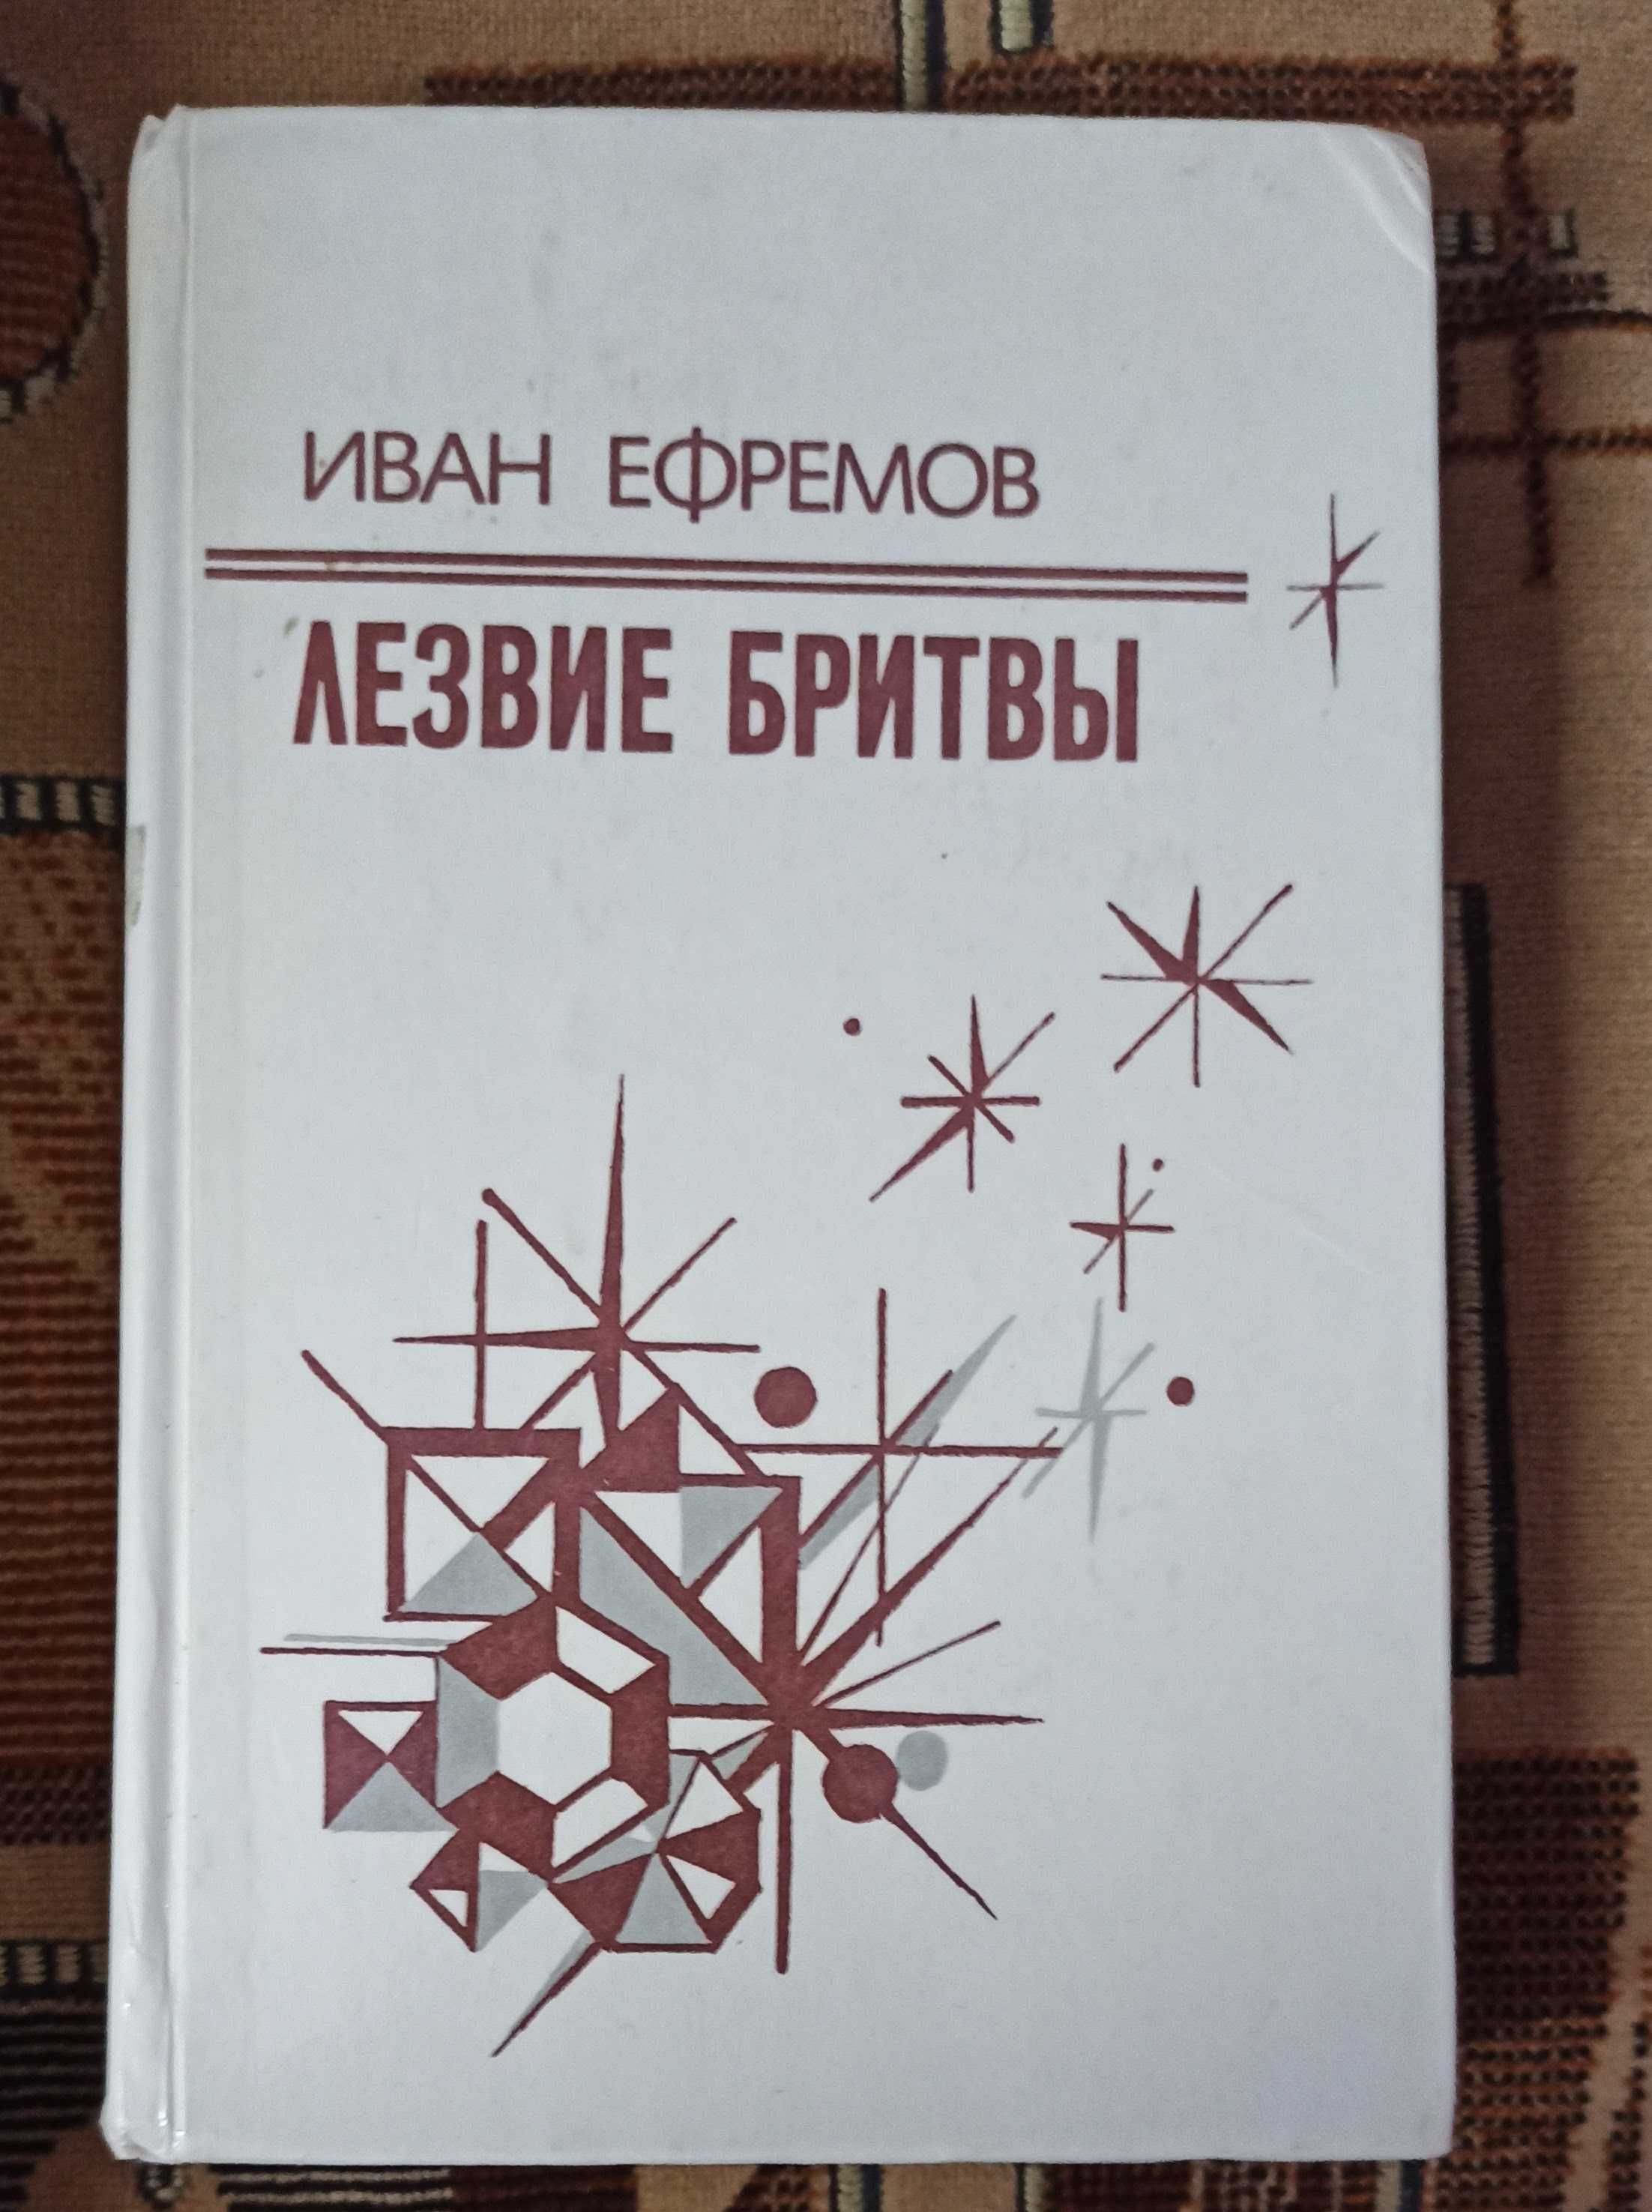 Книга Иван Ефремов "Лезвие бритвы"